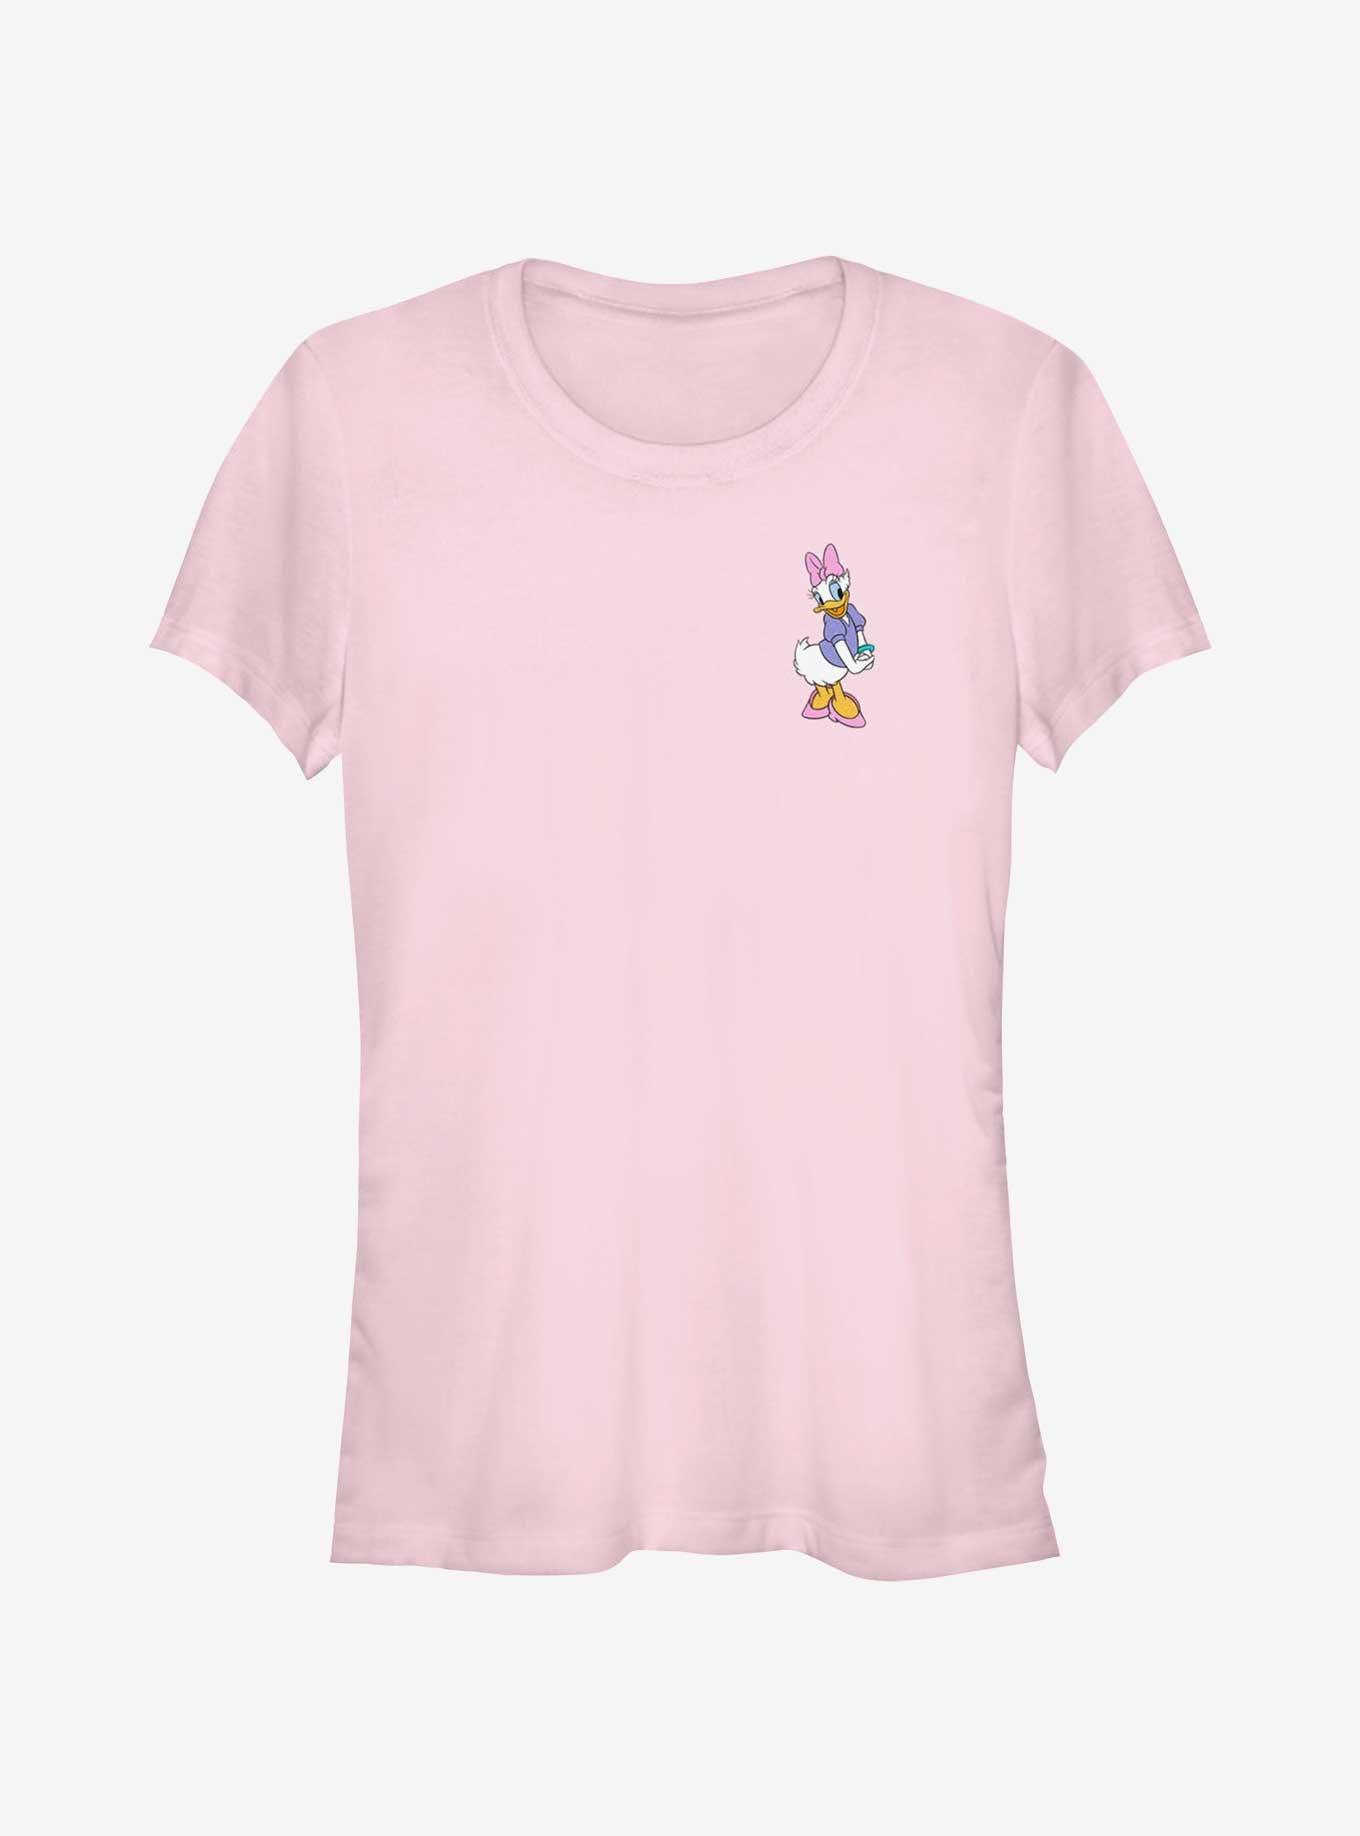 Disney Daisy Duck Traditional Daisy Pocket Girls T-Shirt, LIGHT PINK, hi-res